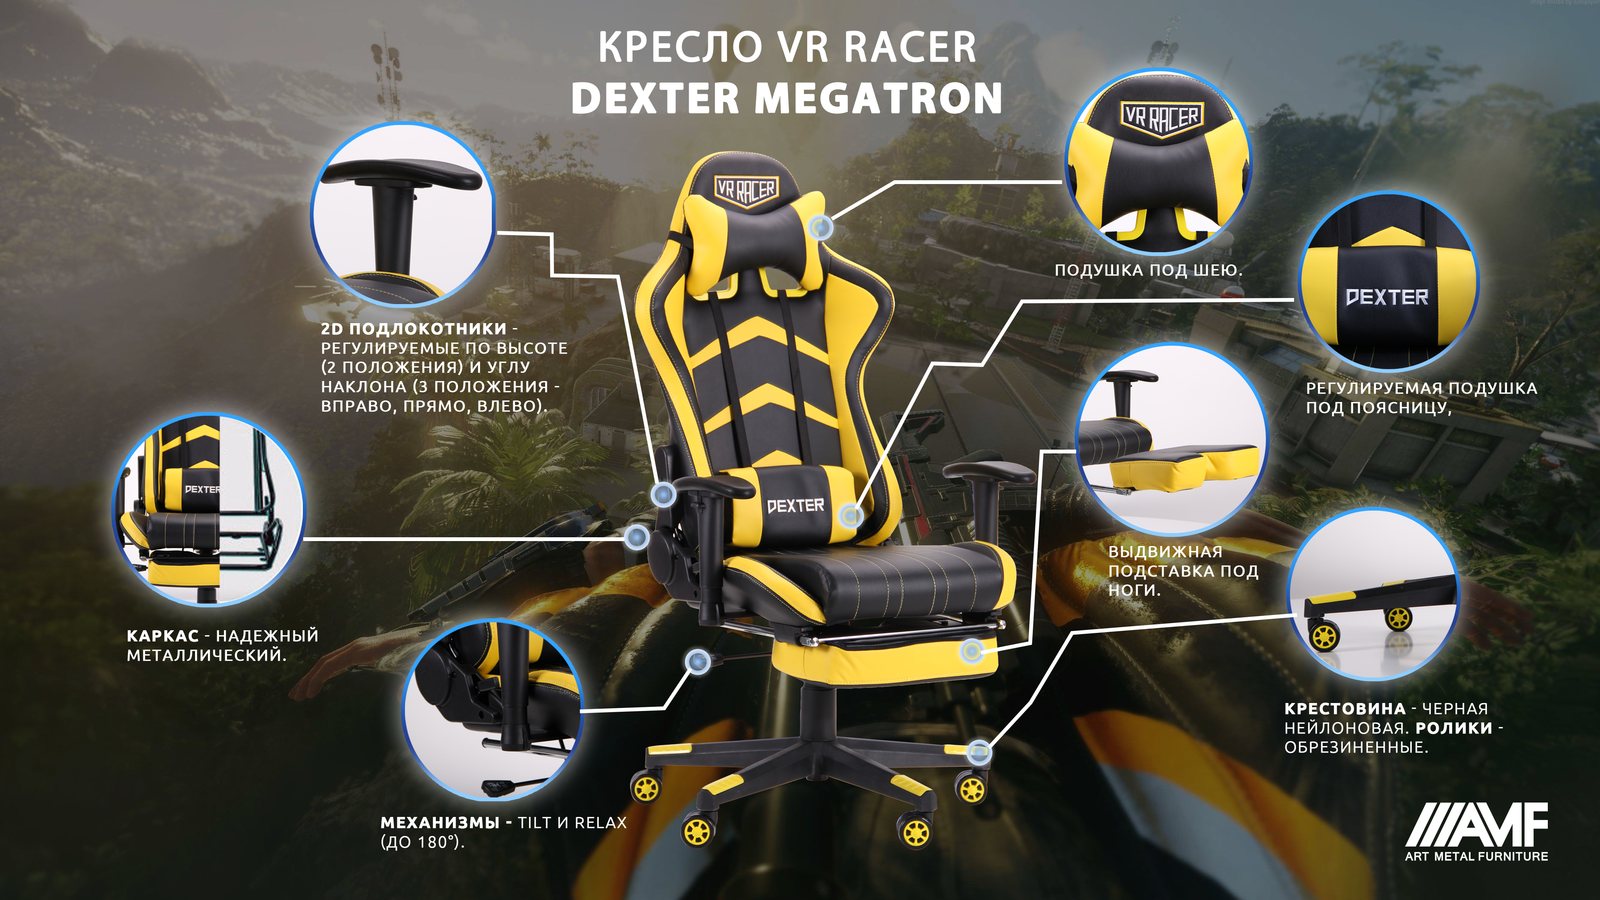 Кресло VR Racer Dexter Megatron описание